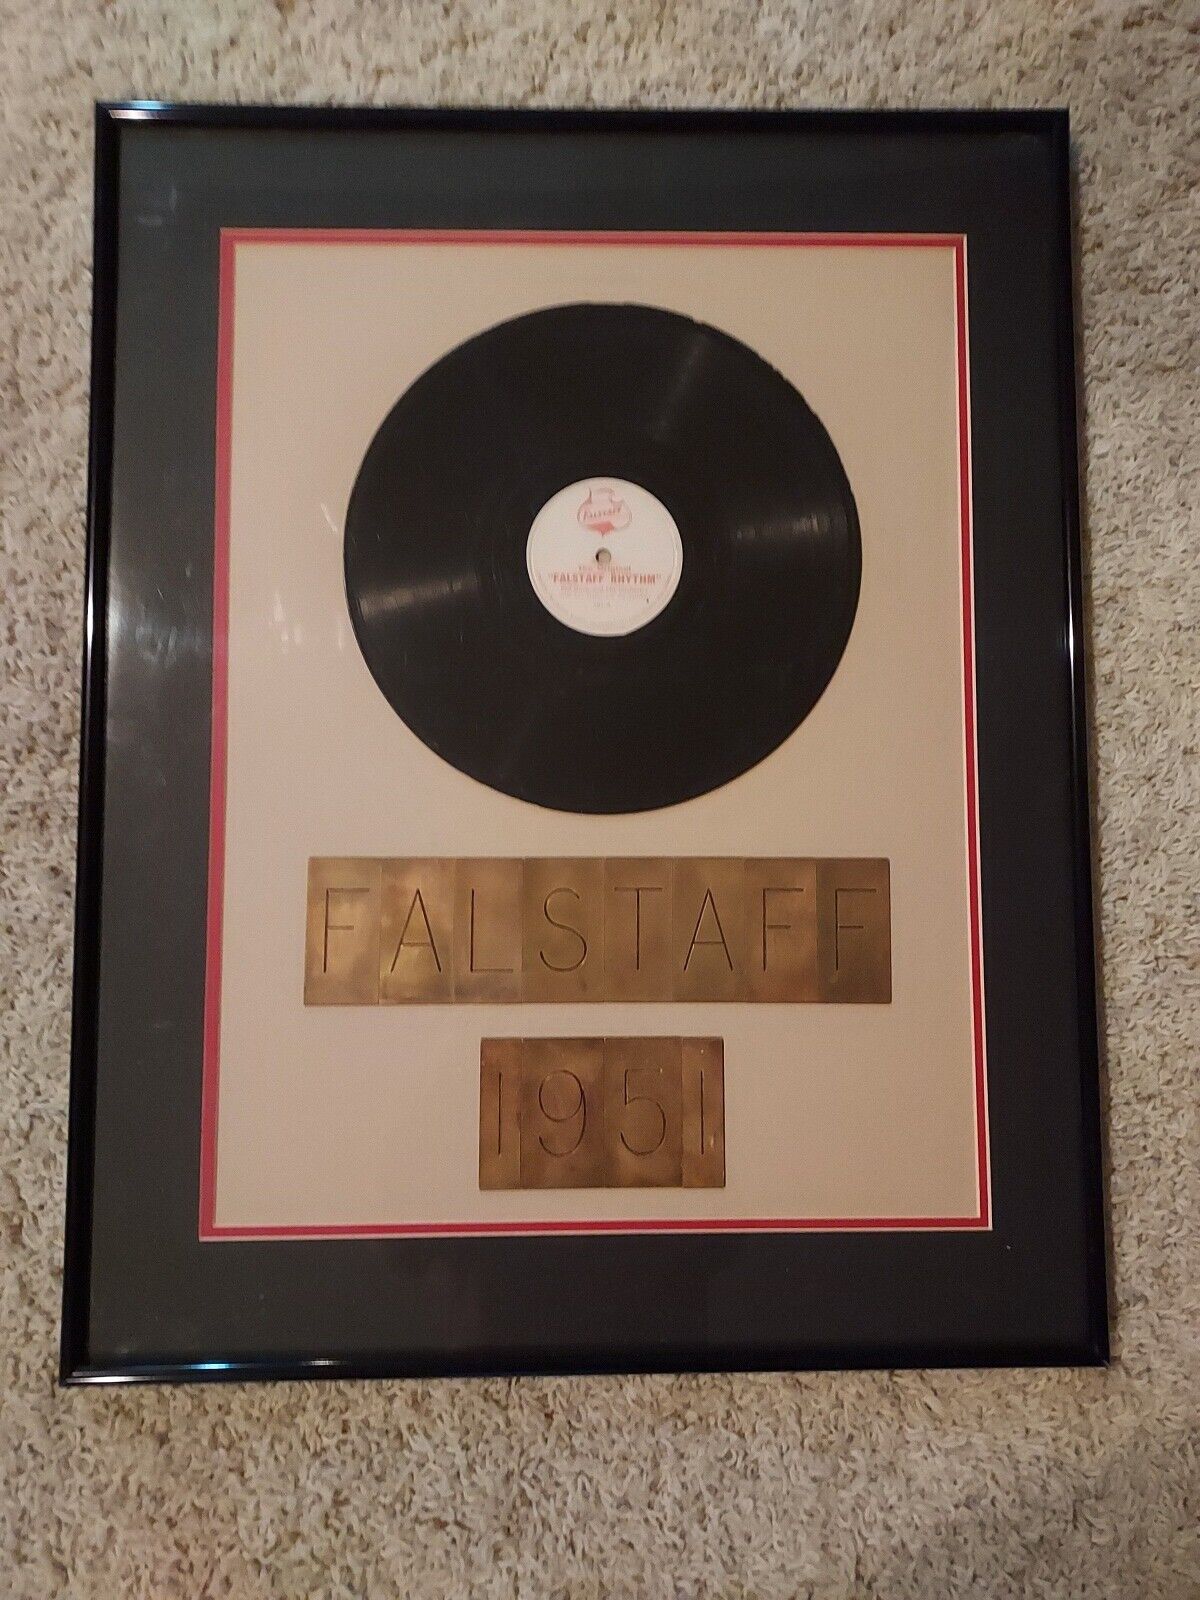 Falstaff Beer Vinyl Record...Framed & Matted - 1951